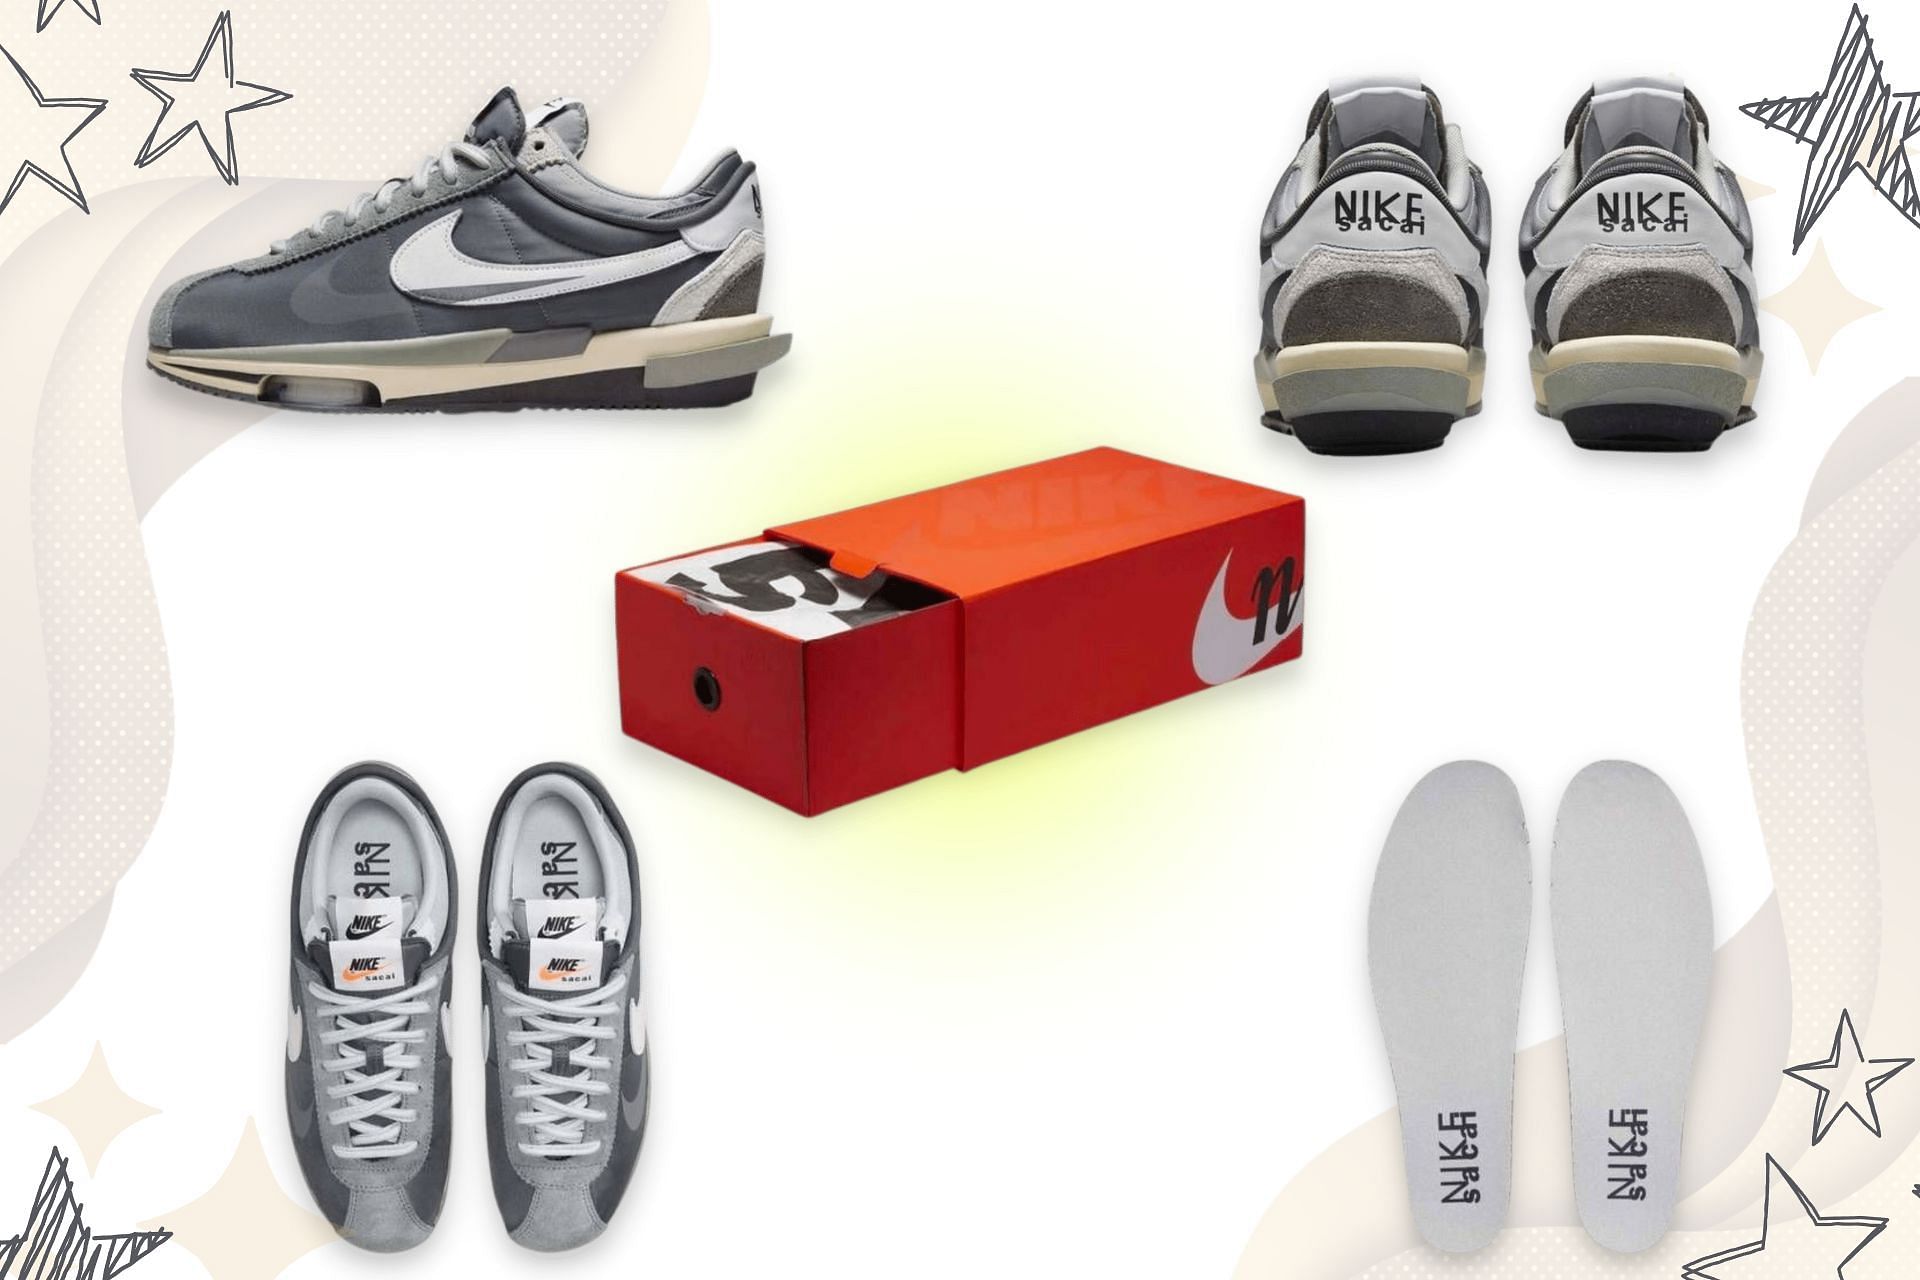 Sacai: When will be Sacai x Nike Cortez Zoom âIron Greyâ shoes be released? Price and more explored